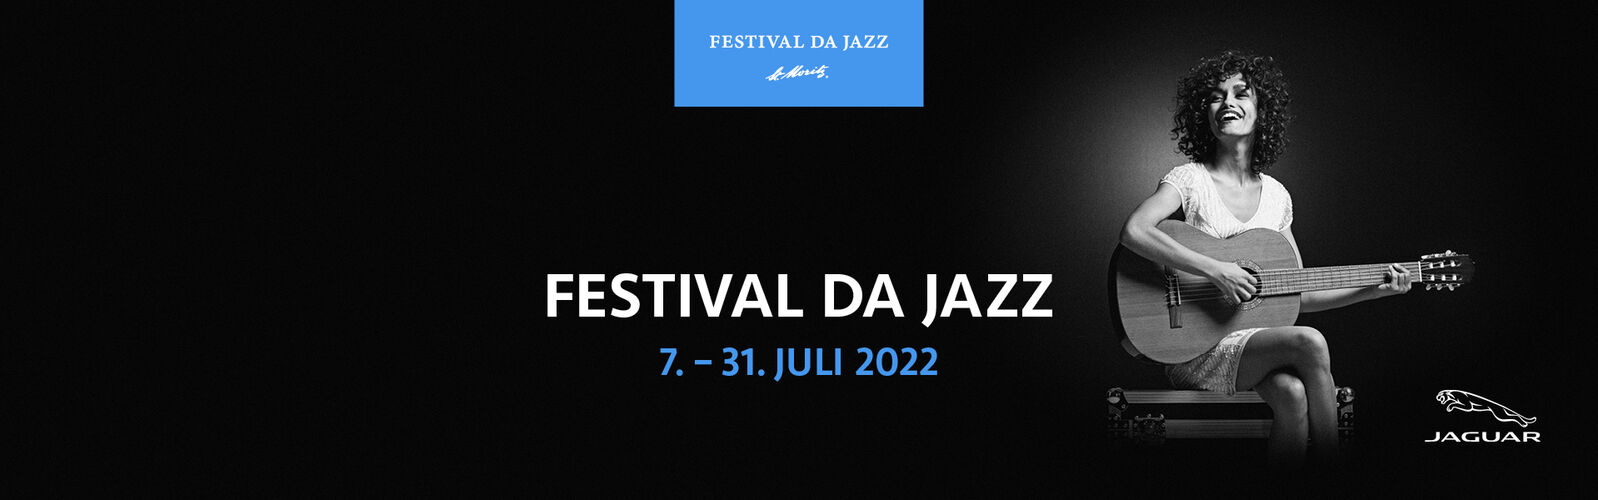 Festival da Jazz - 07. bis 31. Juli 2022